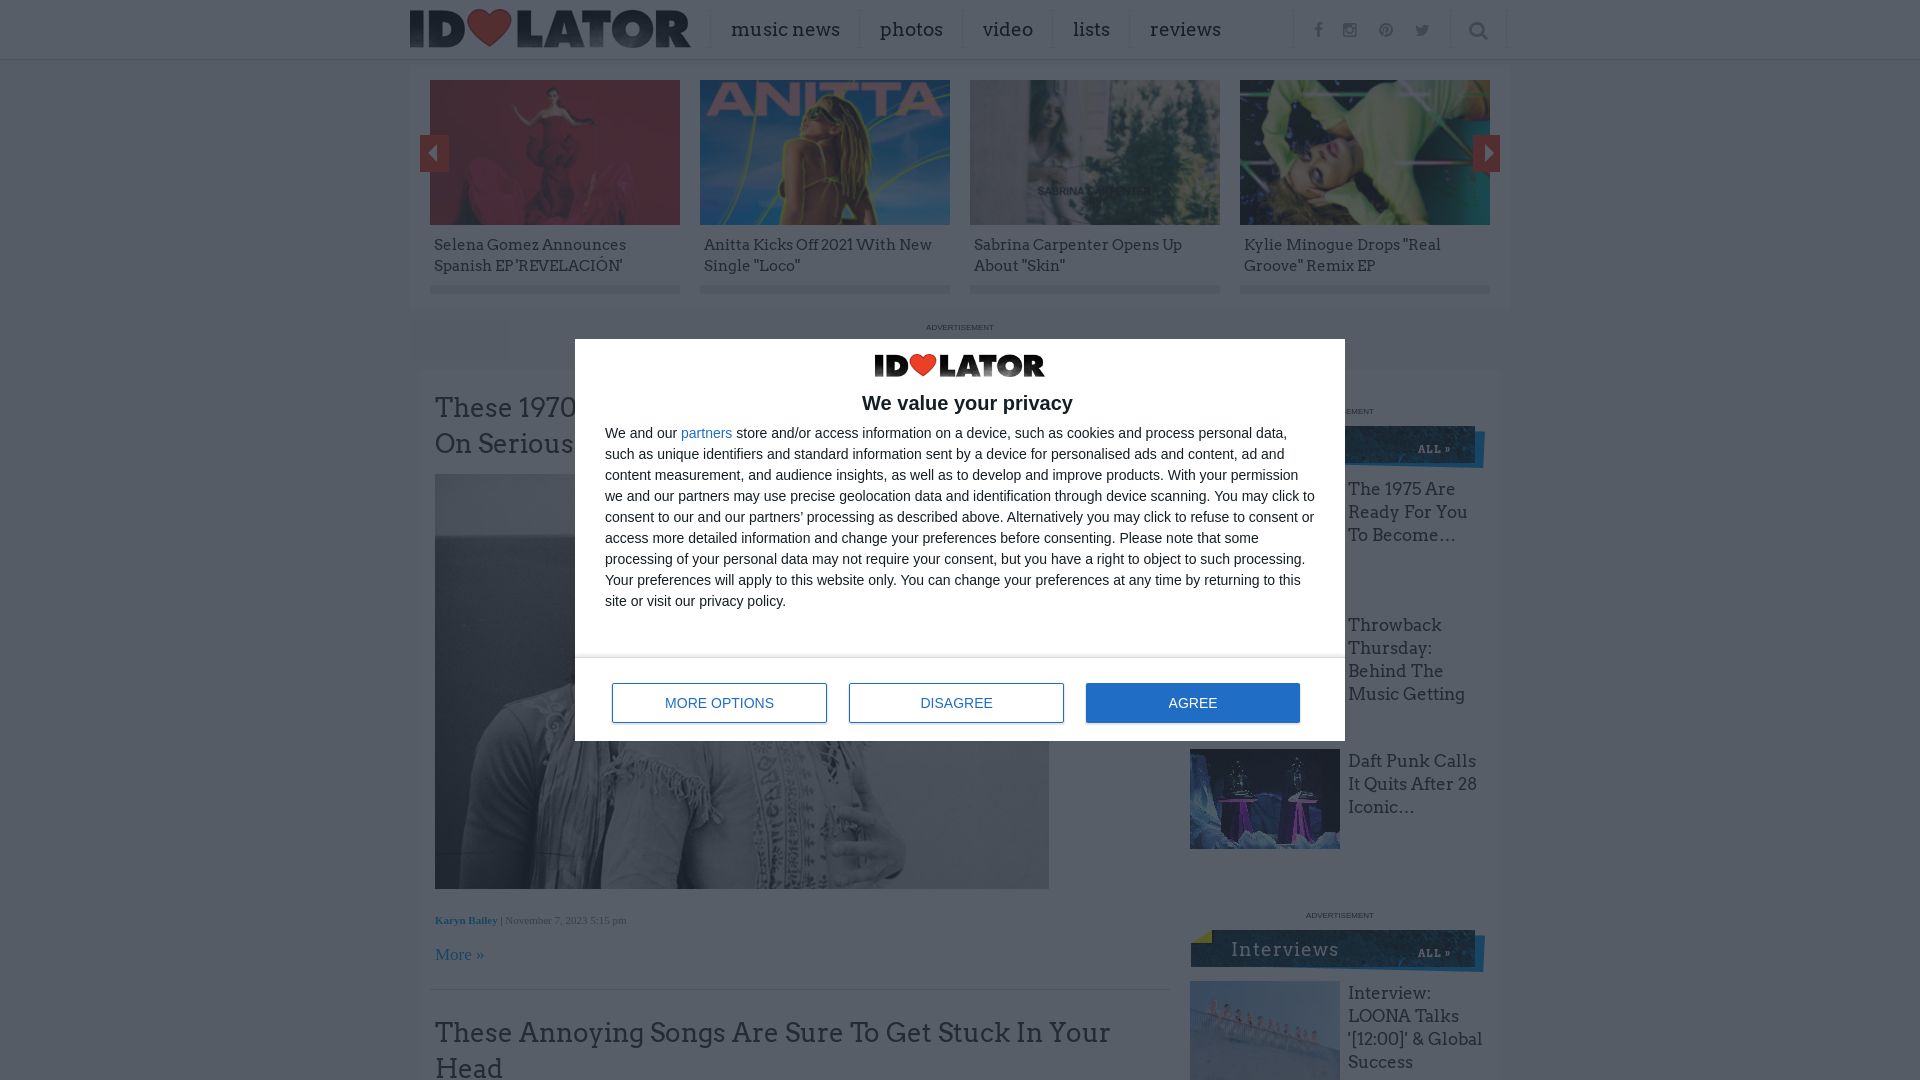 Status do site idolator.com está   ONLINE